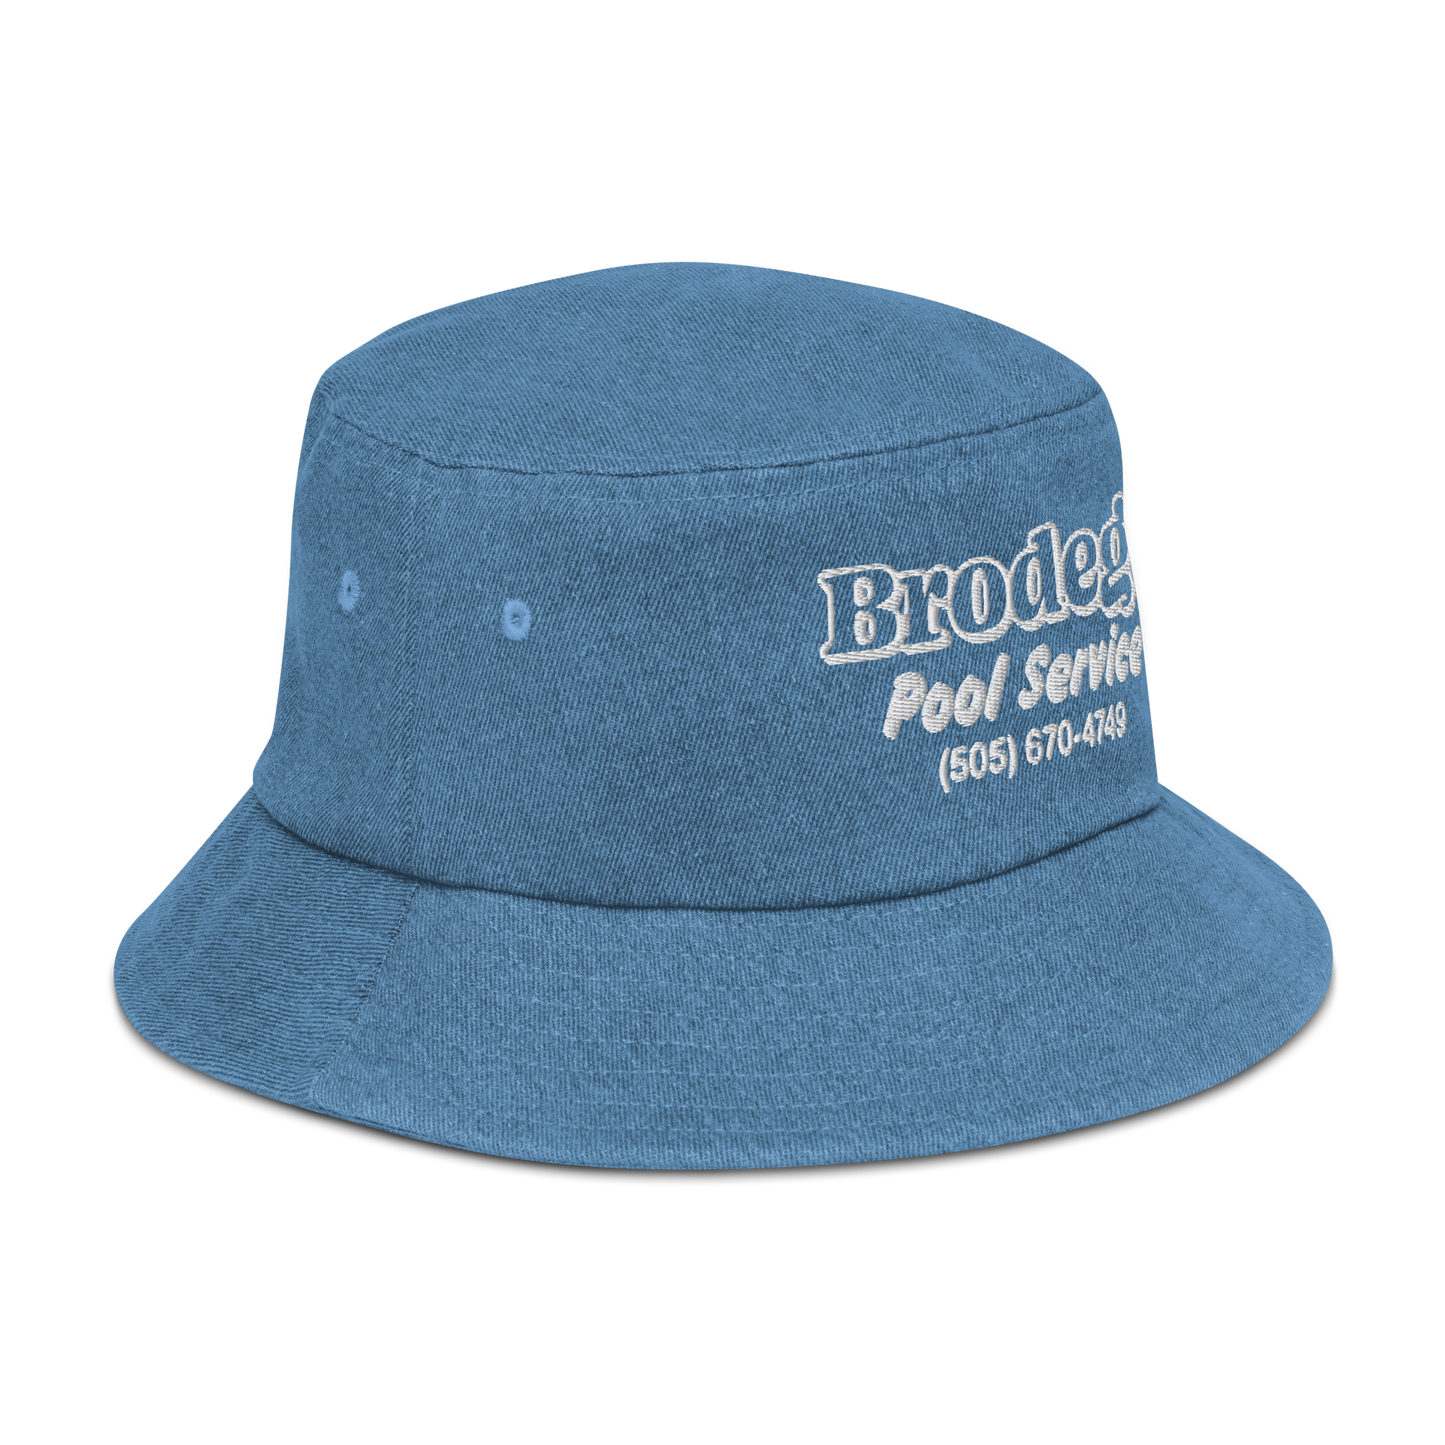 Mr Foreman / Denim bucket hat